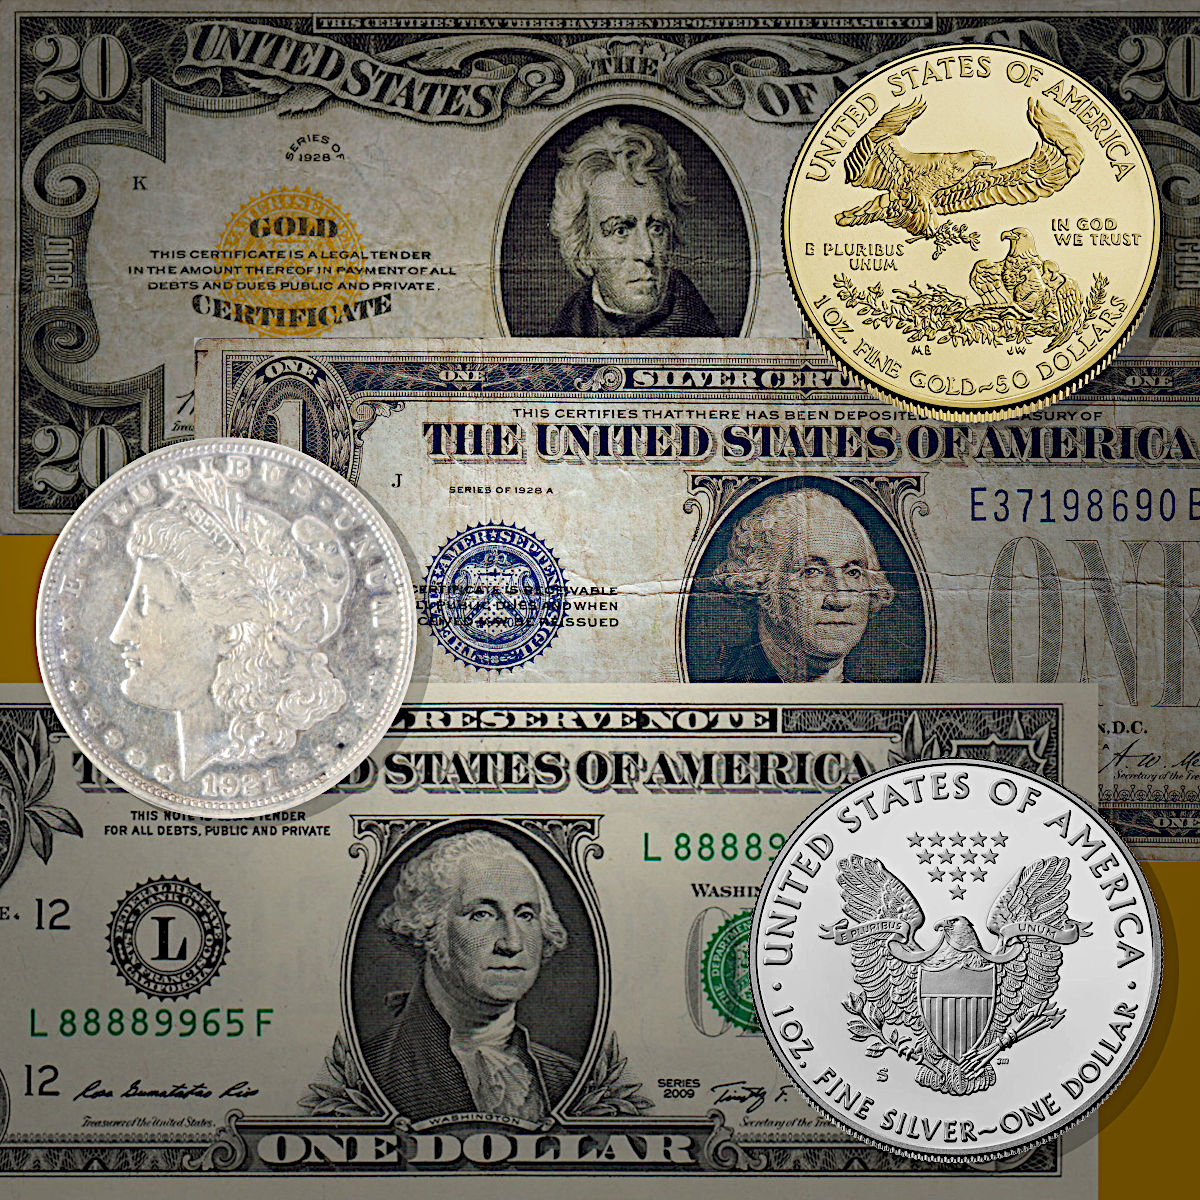 The U.S. Dollar